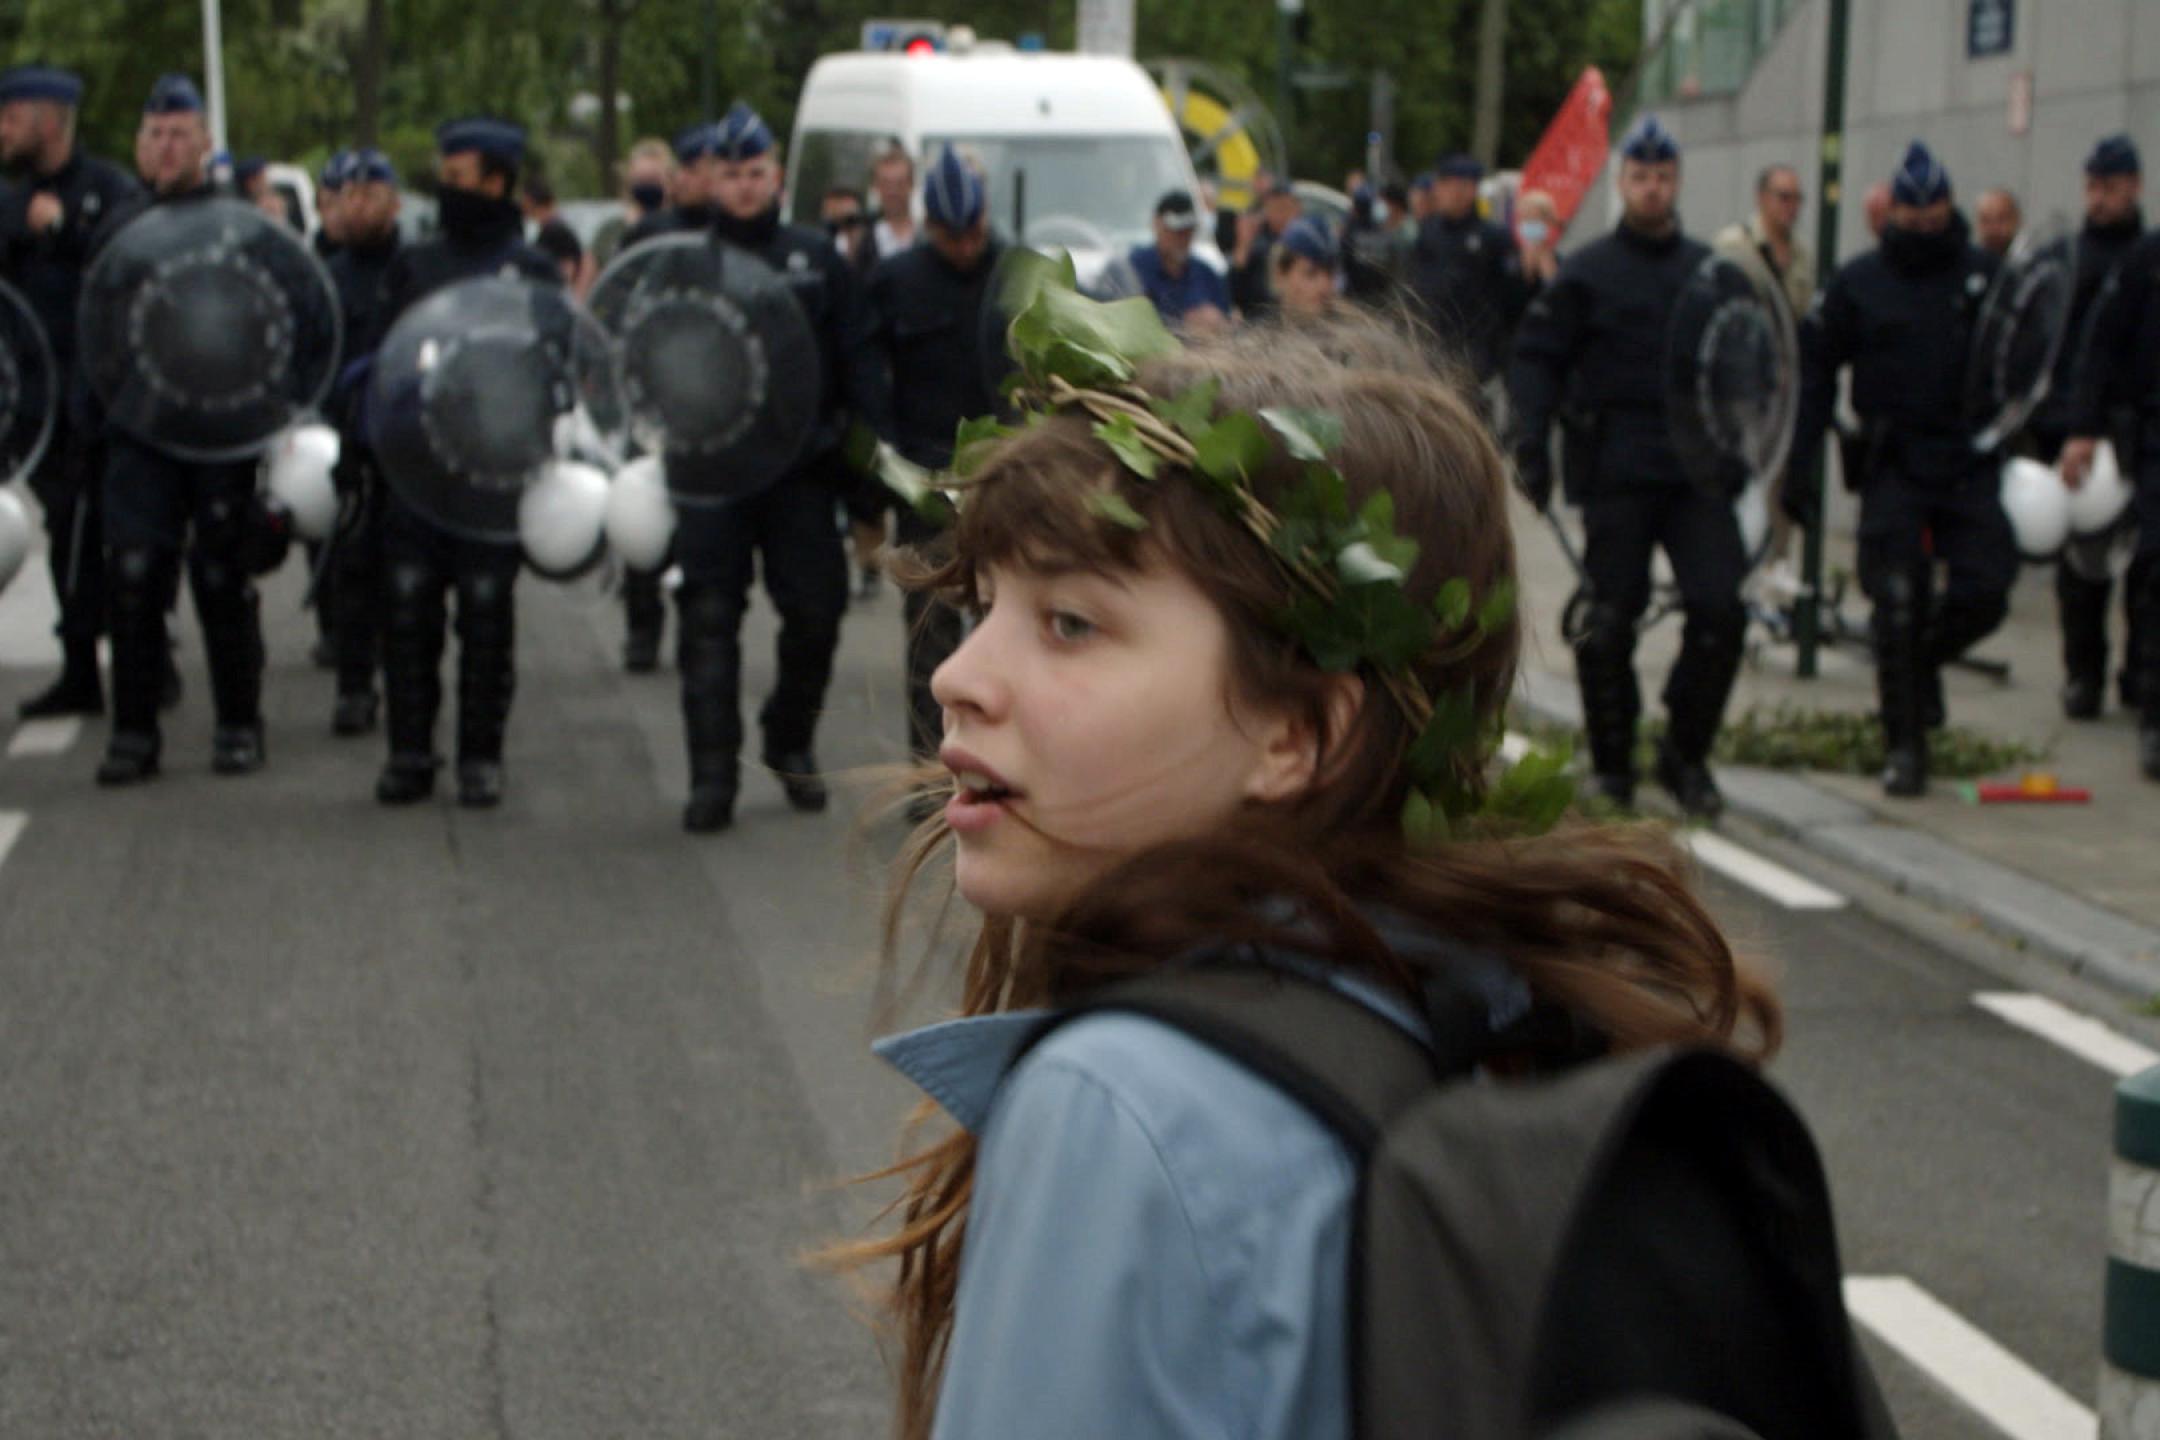 Ein Mädchen mit einem Efeu-Kranz um das lange Haar geht auf einer Straße. Ihr gegenüber stehen etwa ein Dutzend Polizisten in Uniform und mit Schutzschildern.